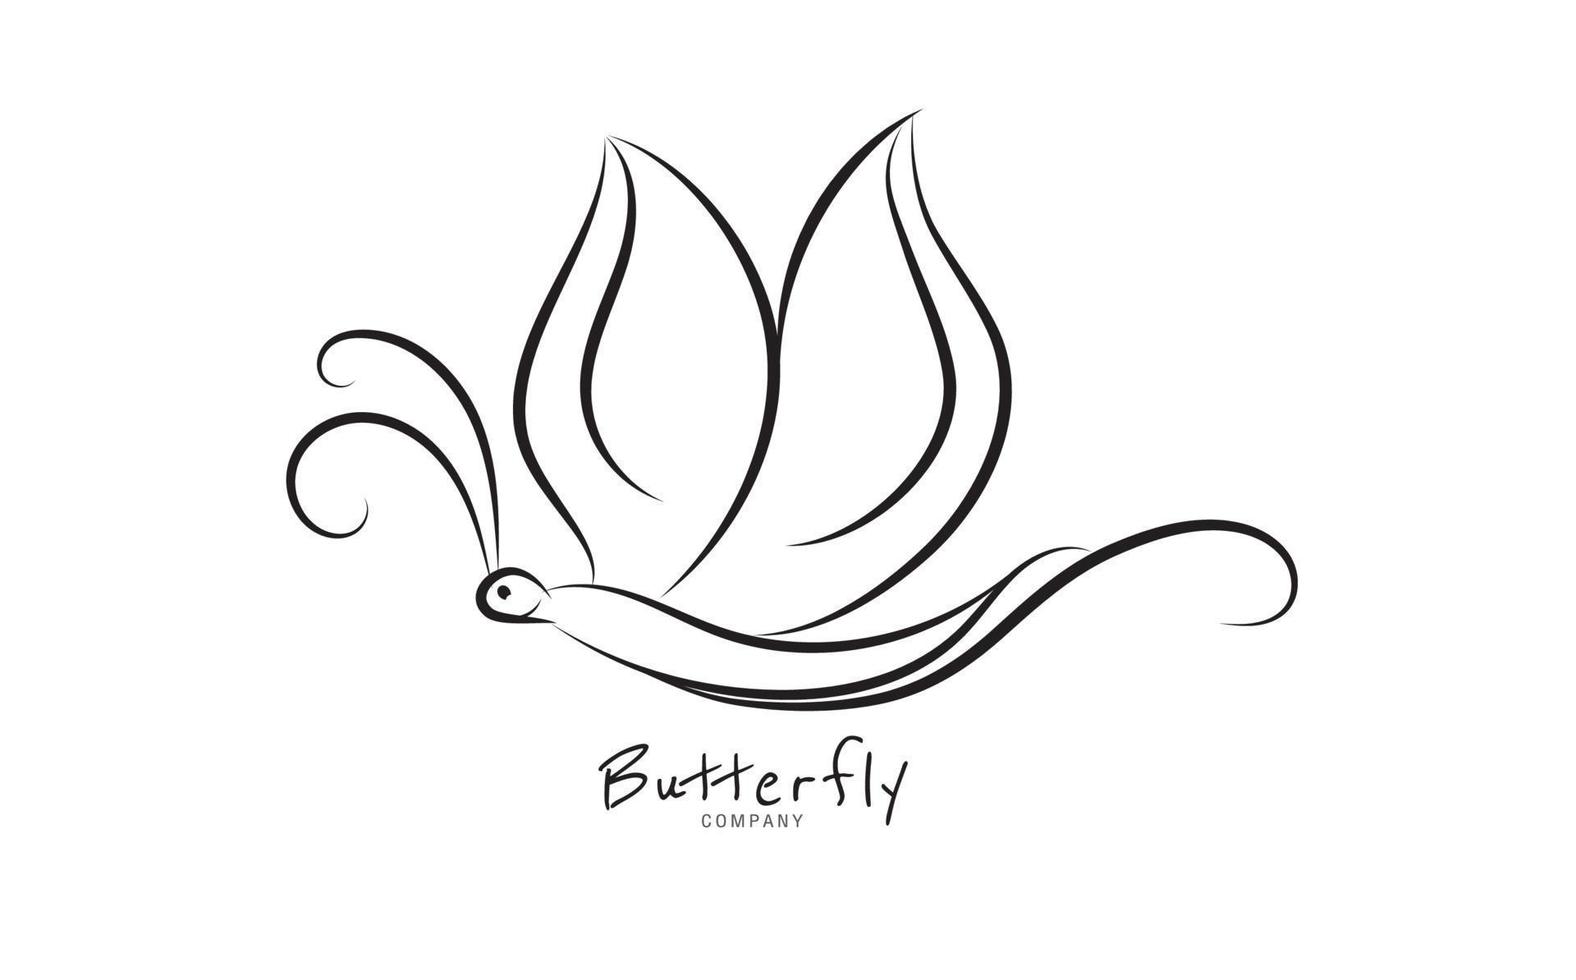 vlinder logo vector sjabloon voor cosmetica, beauty, spa. zwart-wit hand getekende vlinder illustratie. vintage-stijl